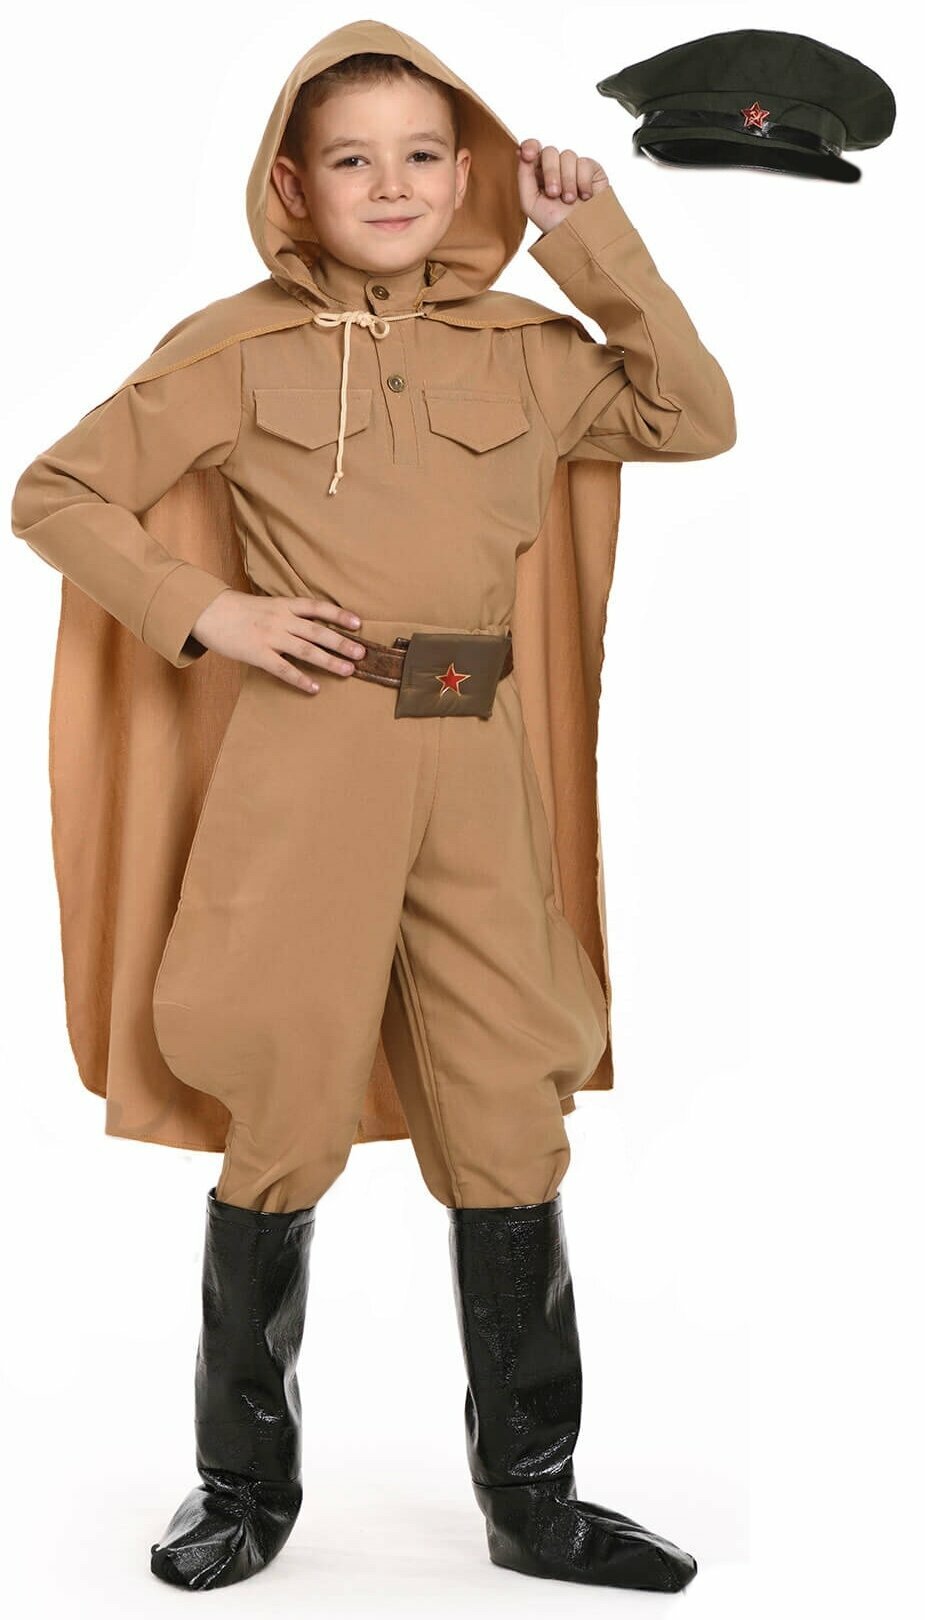 Детский костюм Отважного Командира